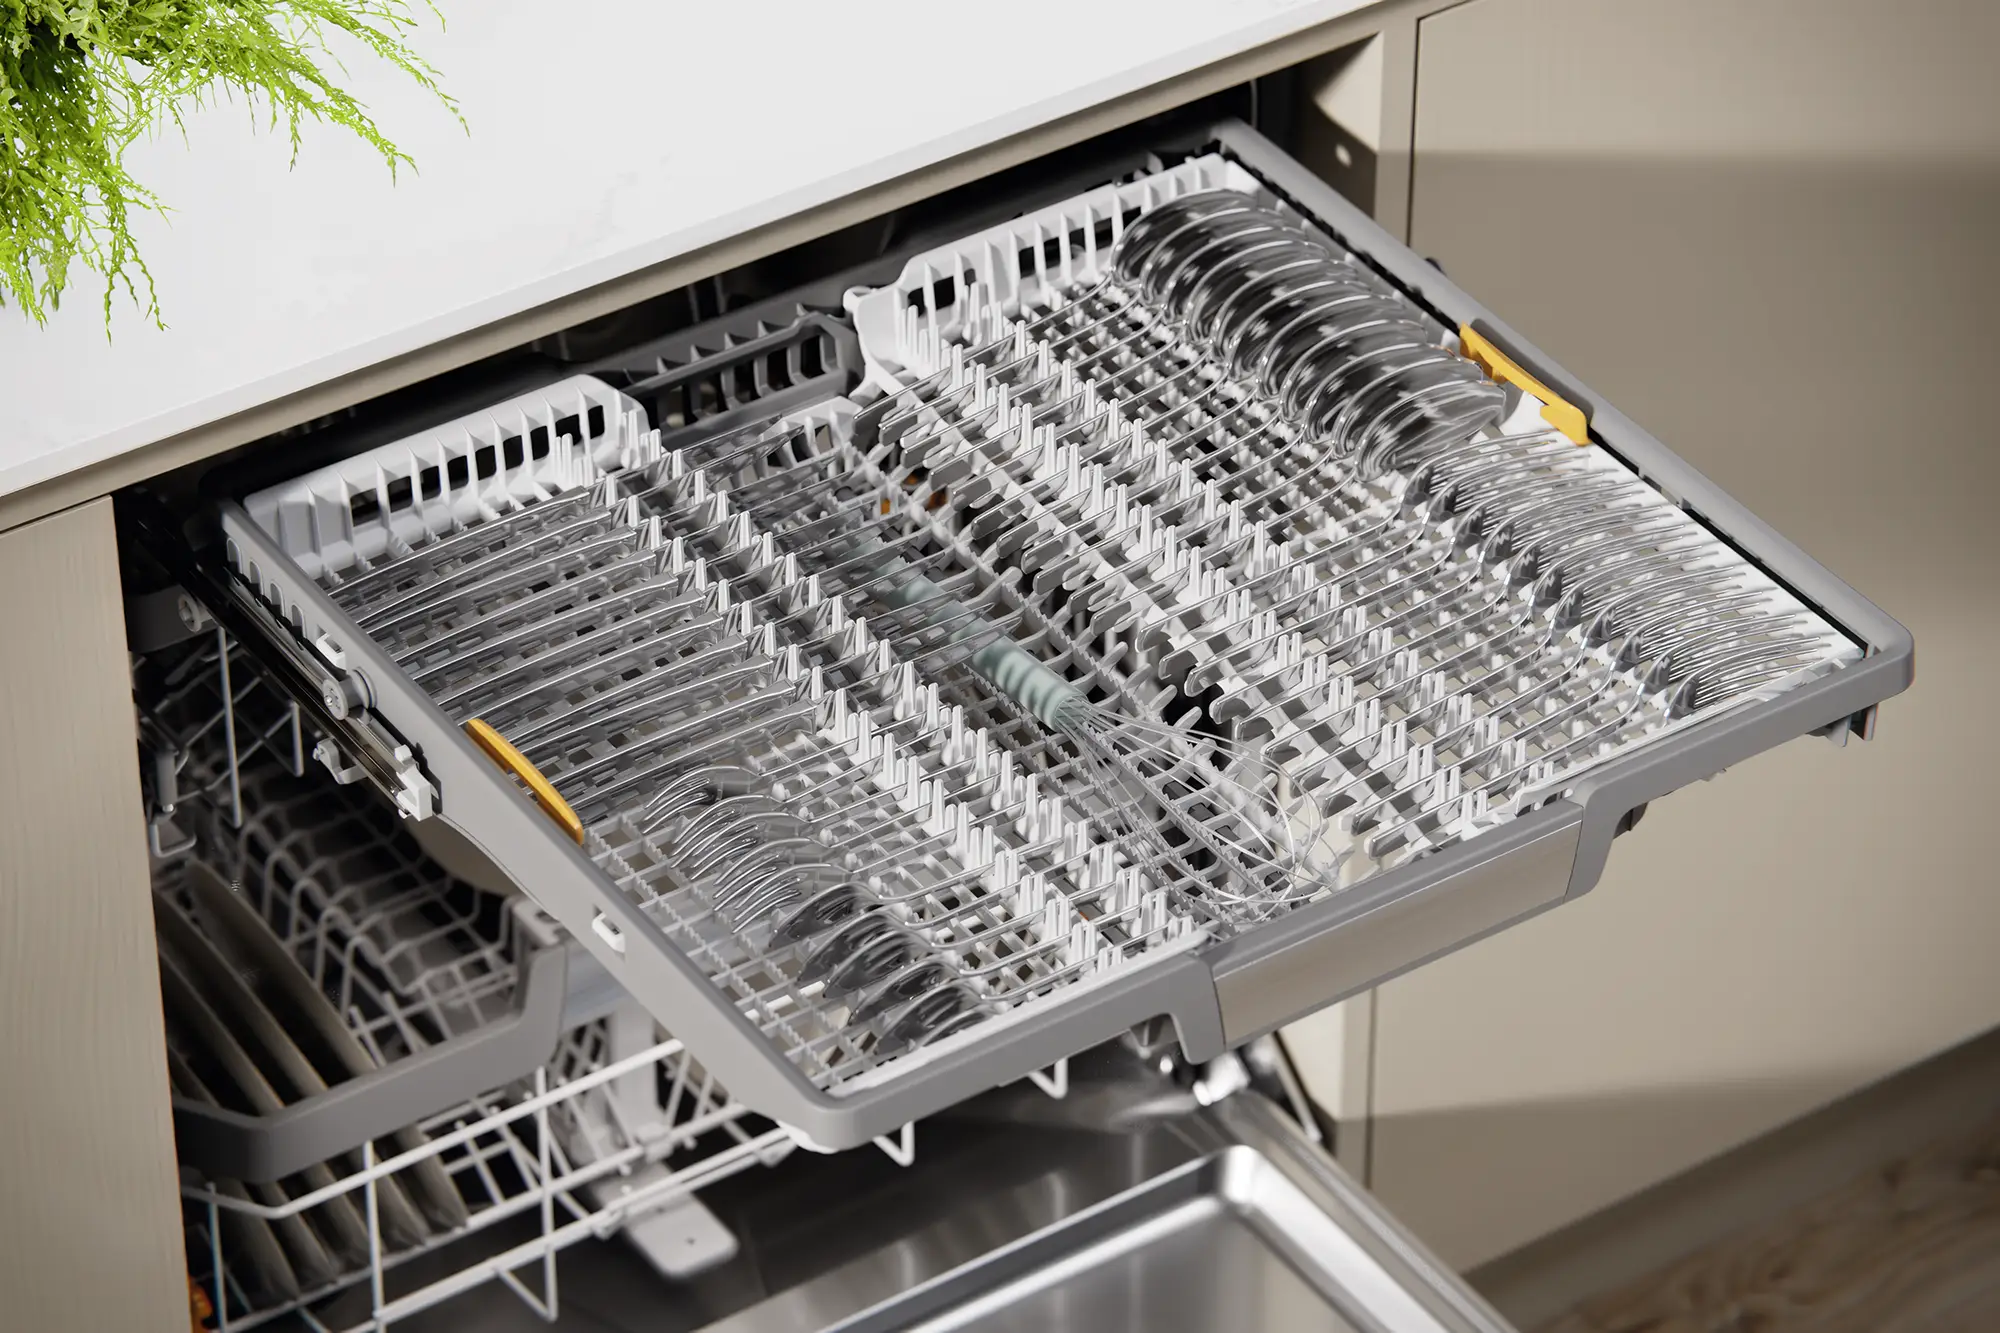 G 7000 dishwasher adjustable basket